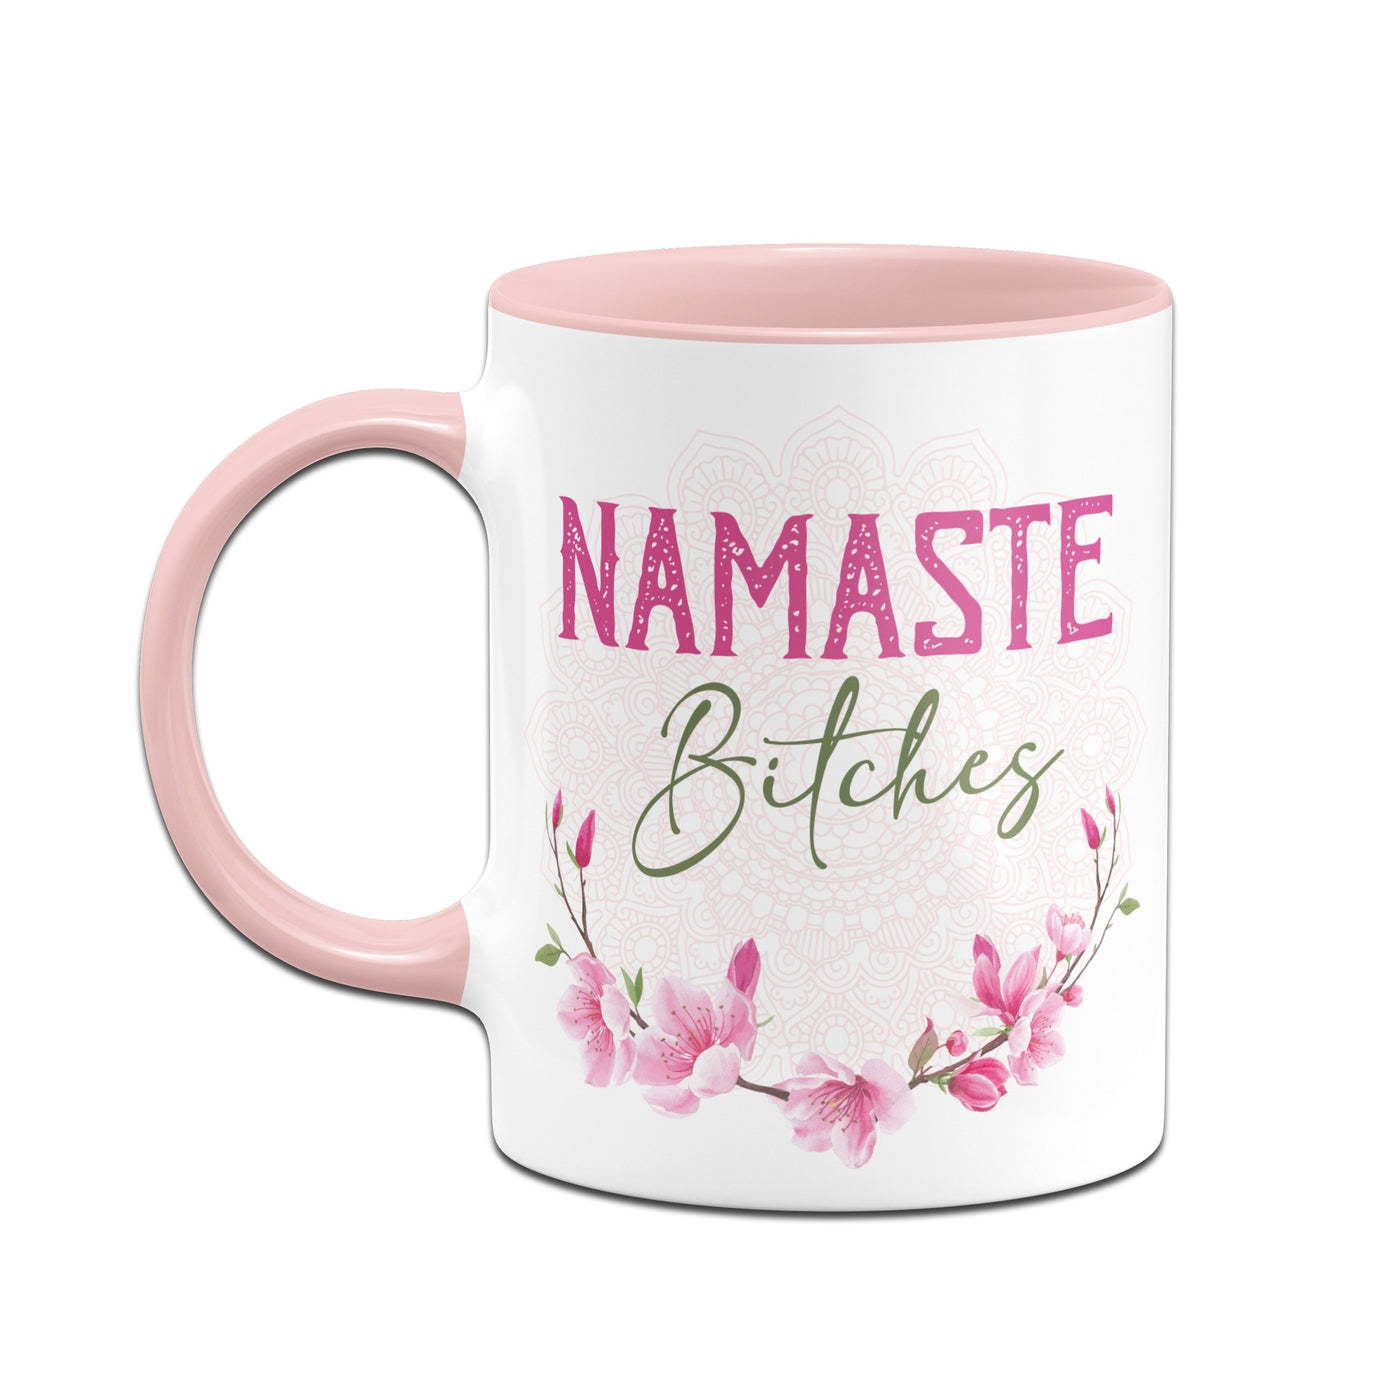 Bild: Tasse - Namaste Bitches! Geschenkidee